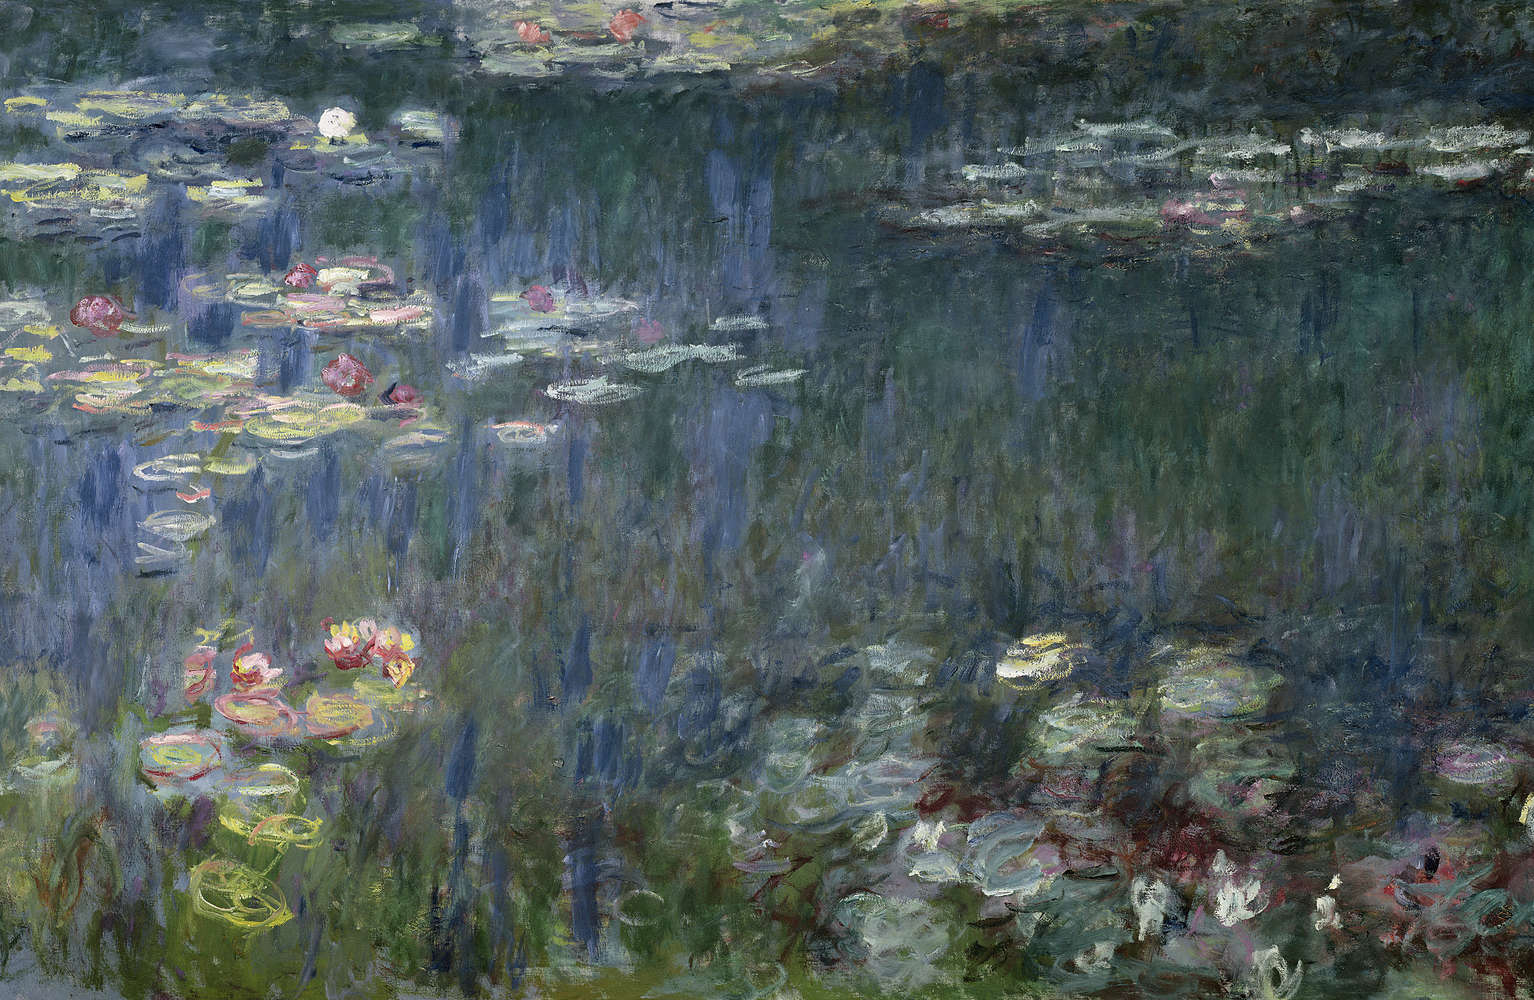             Waterlelies: Groene Reflecties" muurschildering van Claude Monet
        